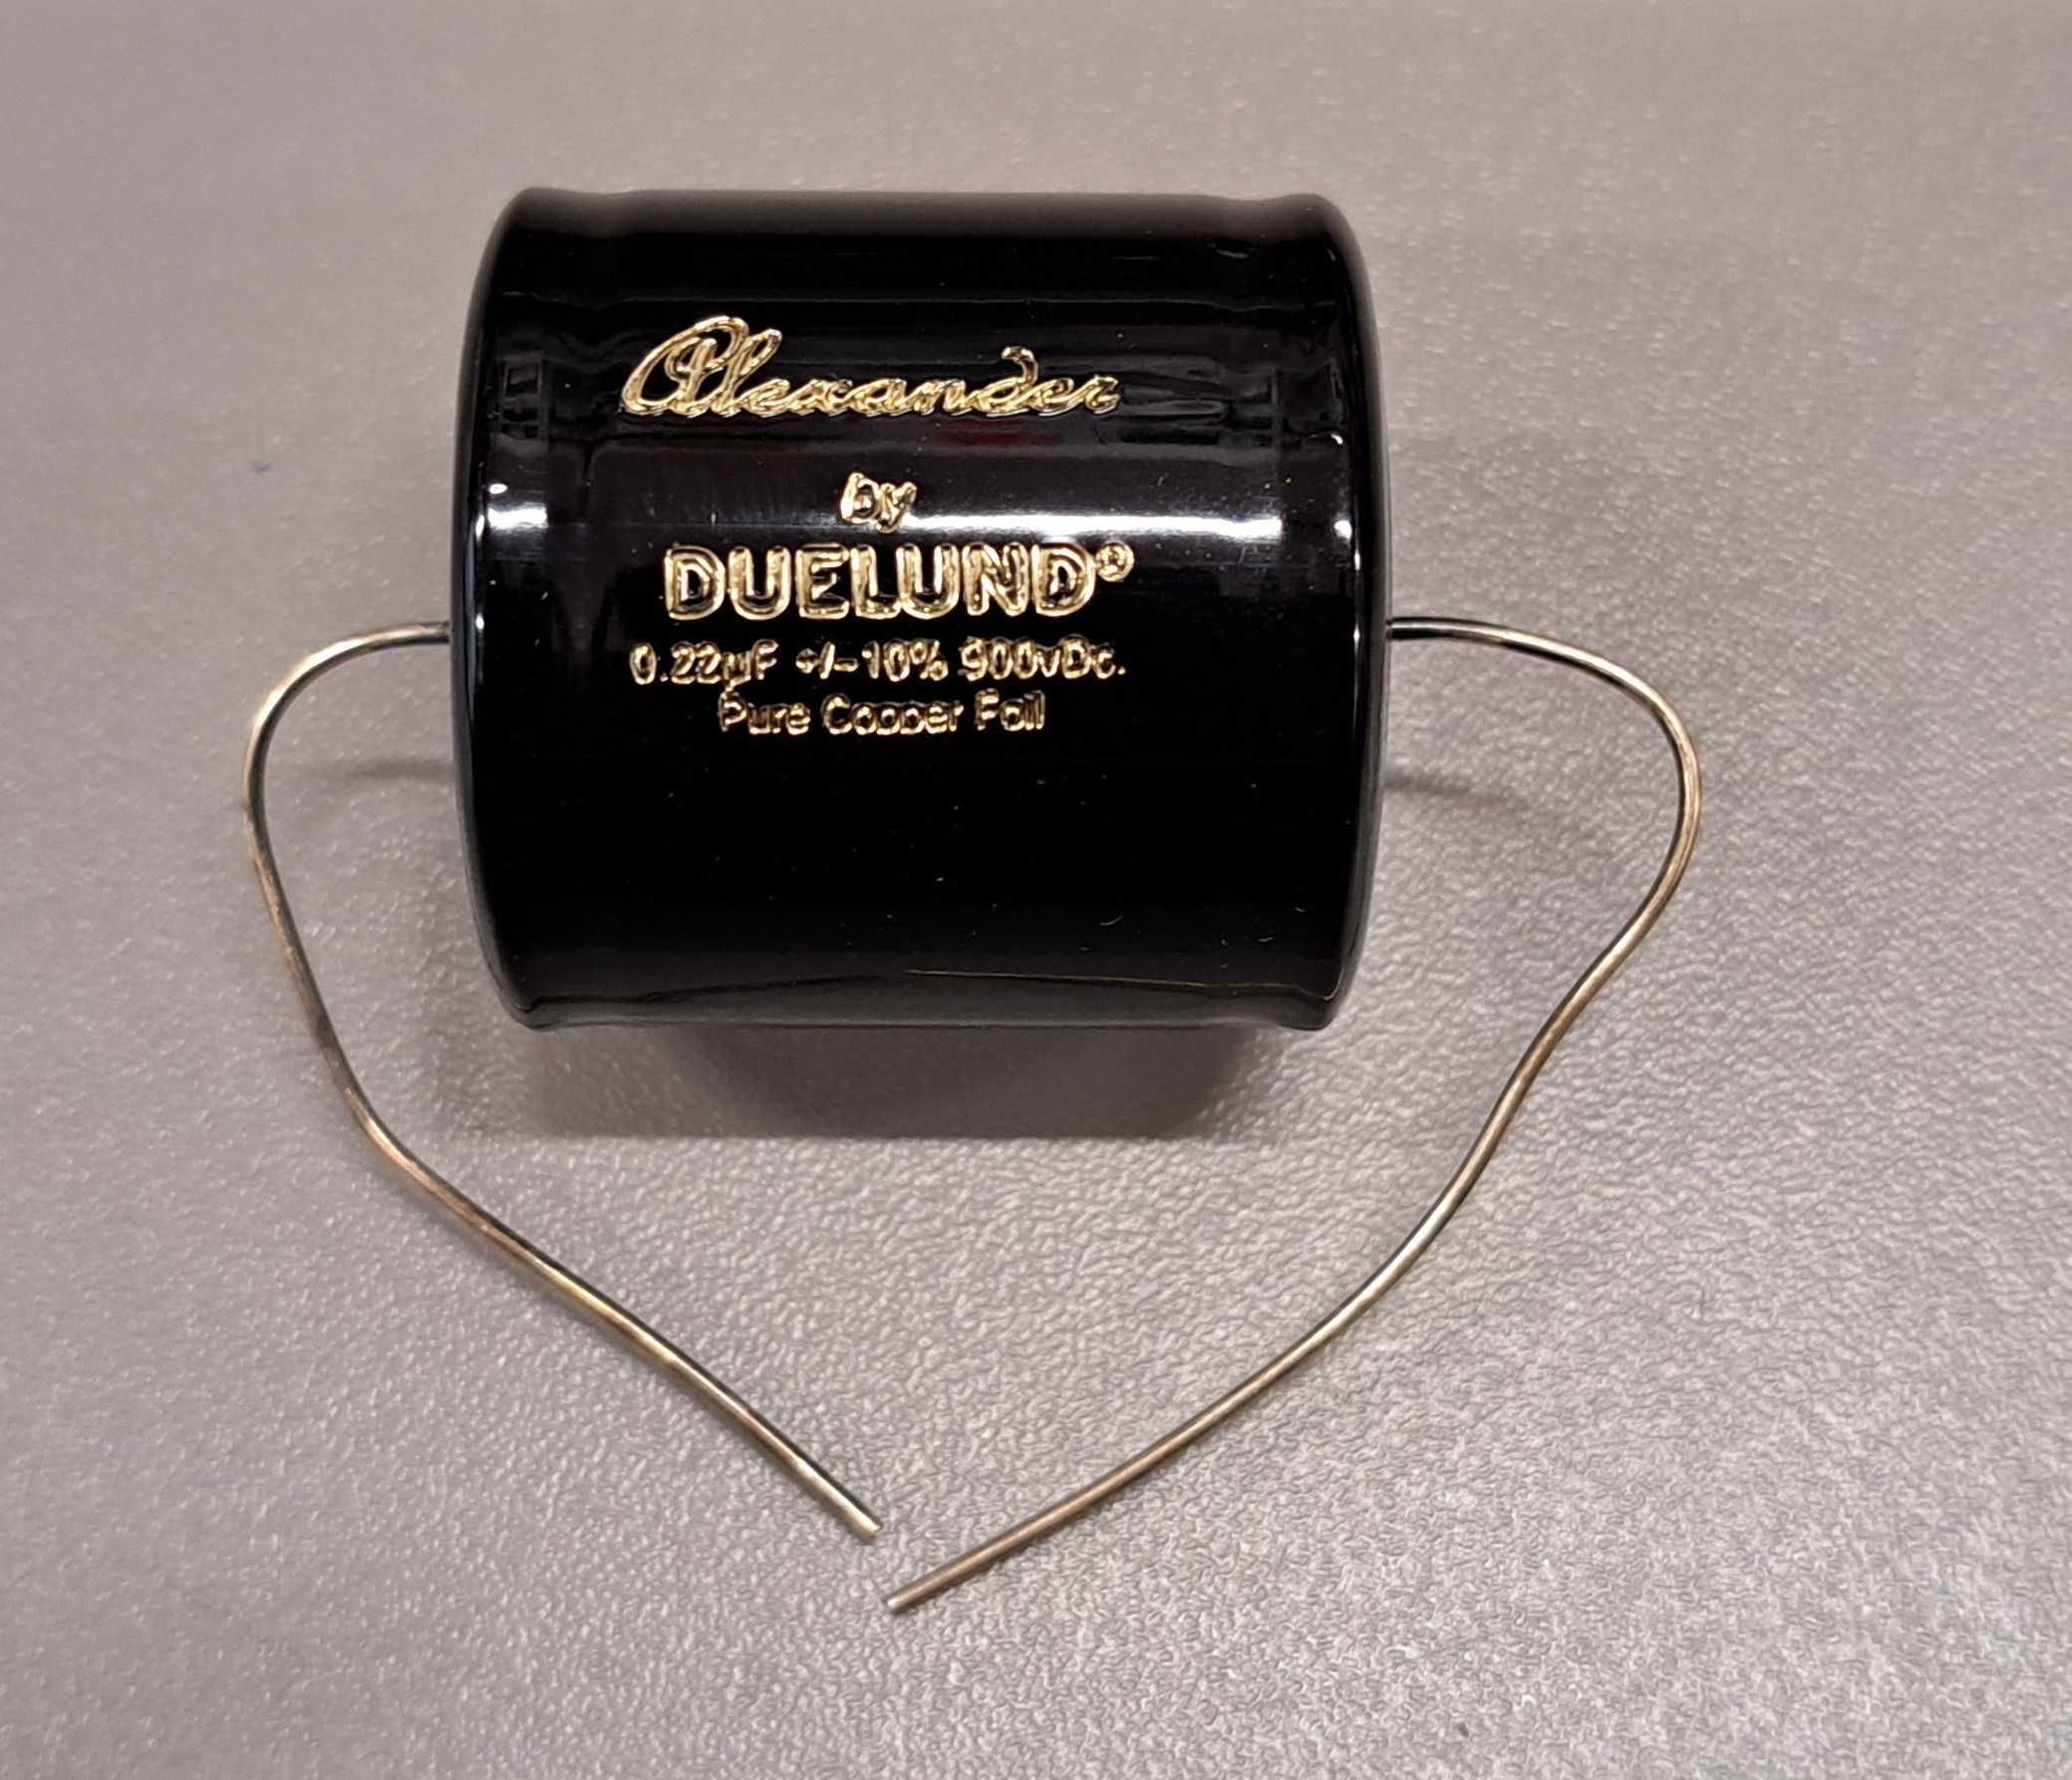 Kondensator Duelund Alexander 0,22UF / 900V - 1szt pure copper foil